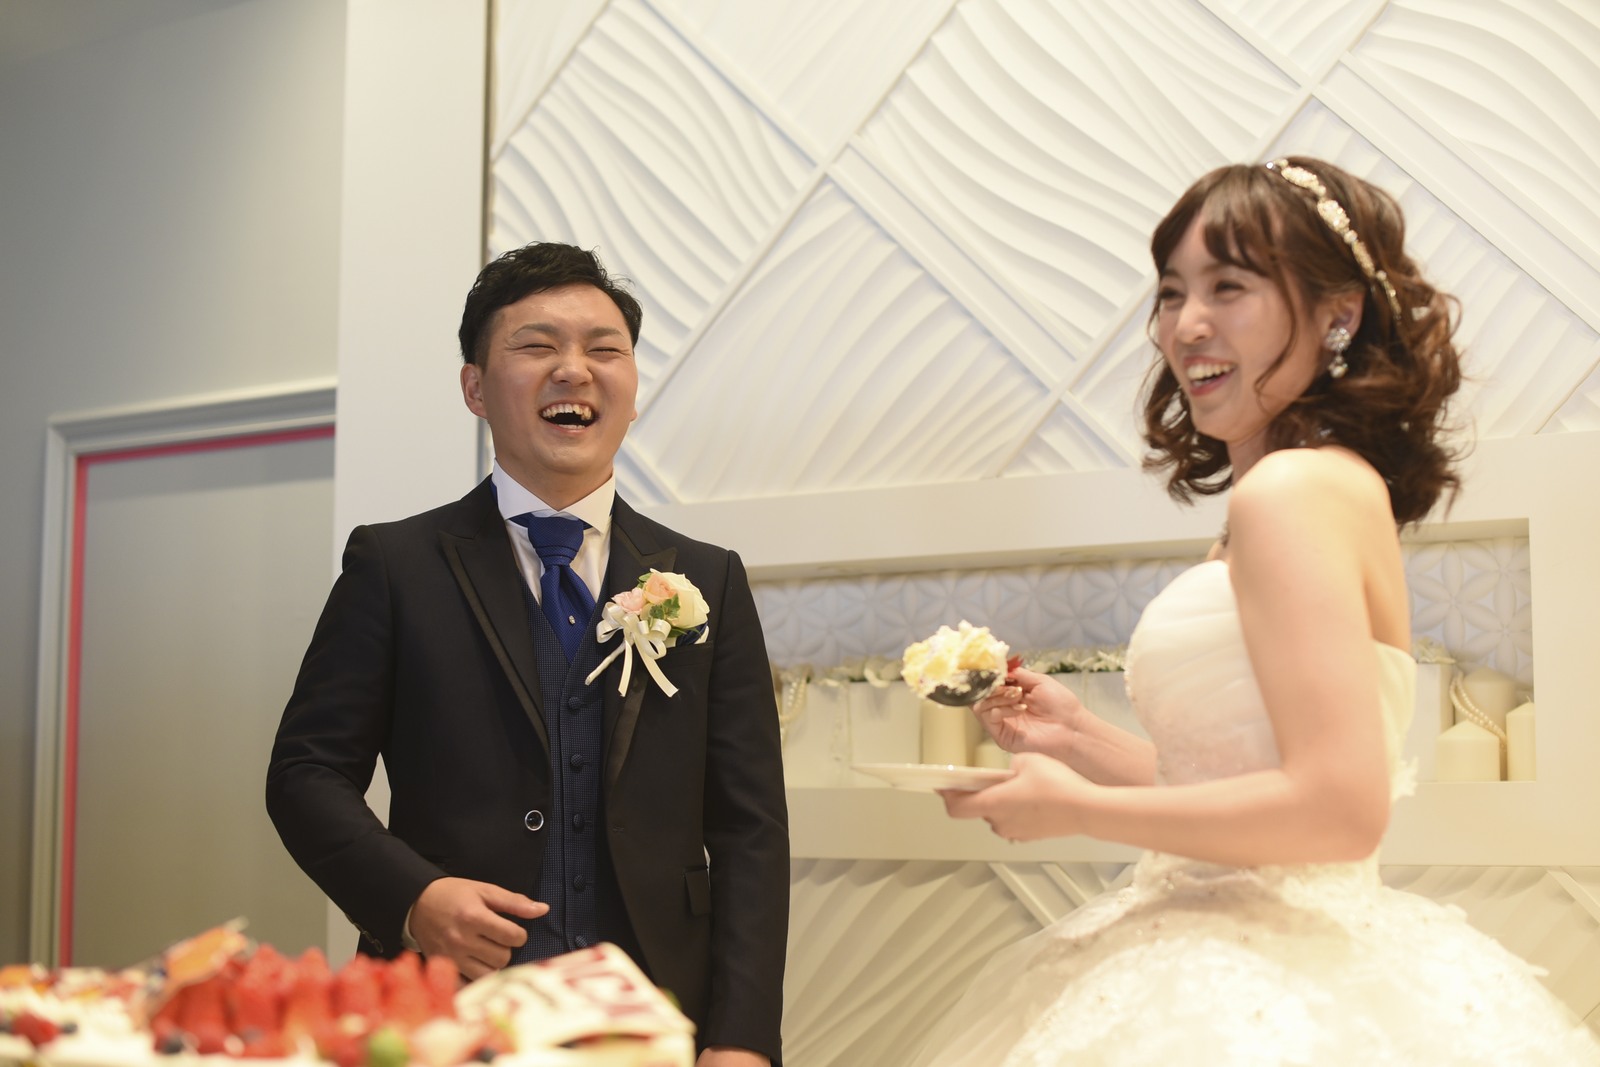 徳島市の結婚式場ブランアンジュでファーストバイトする直前のドキドキしている新郎新婦様